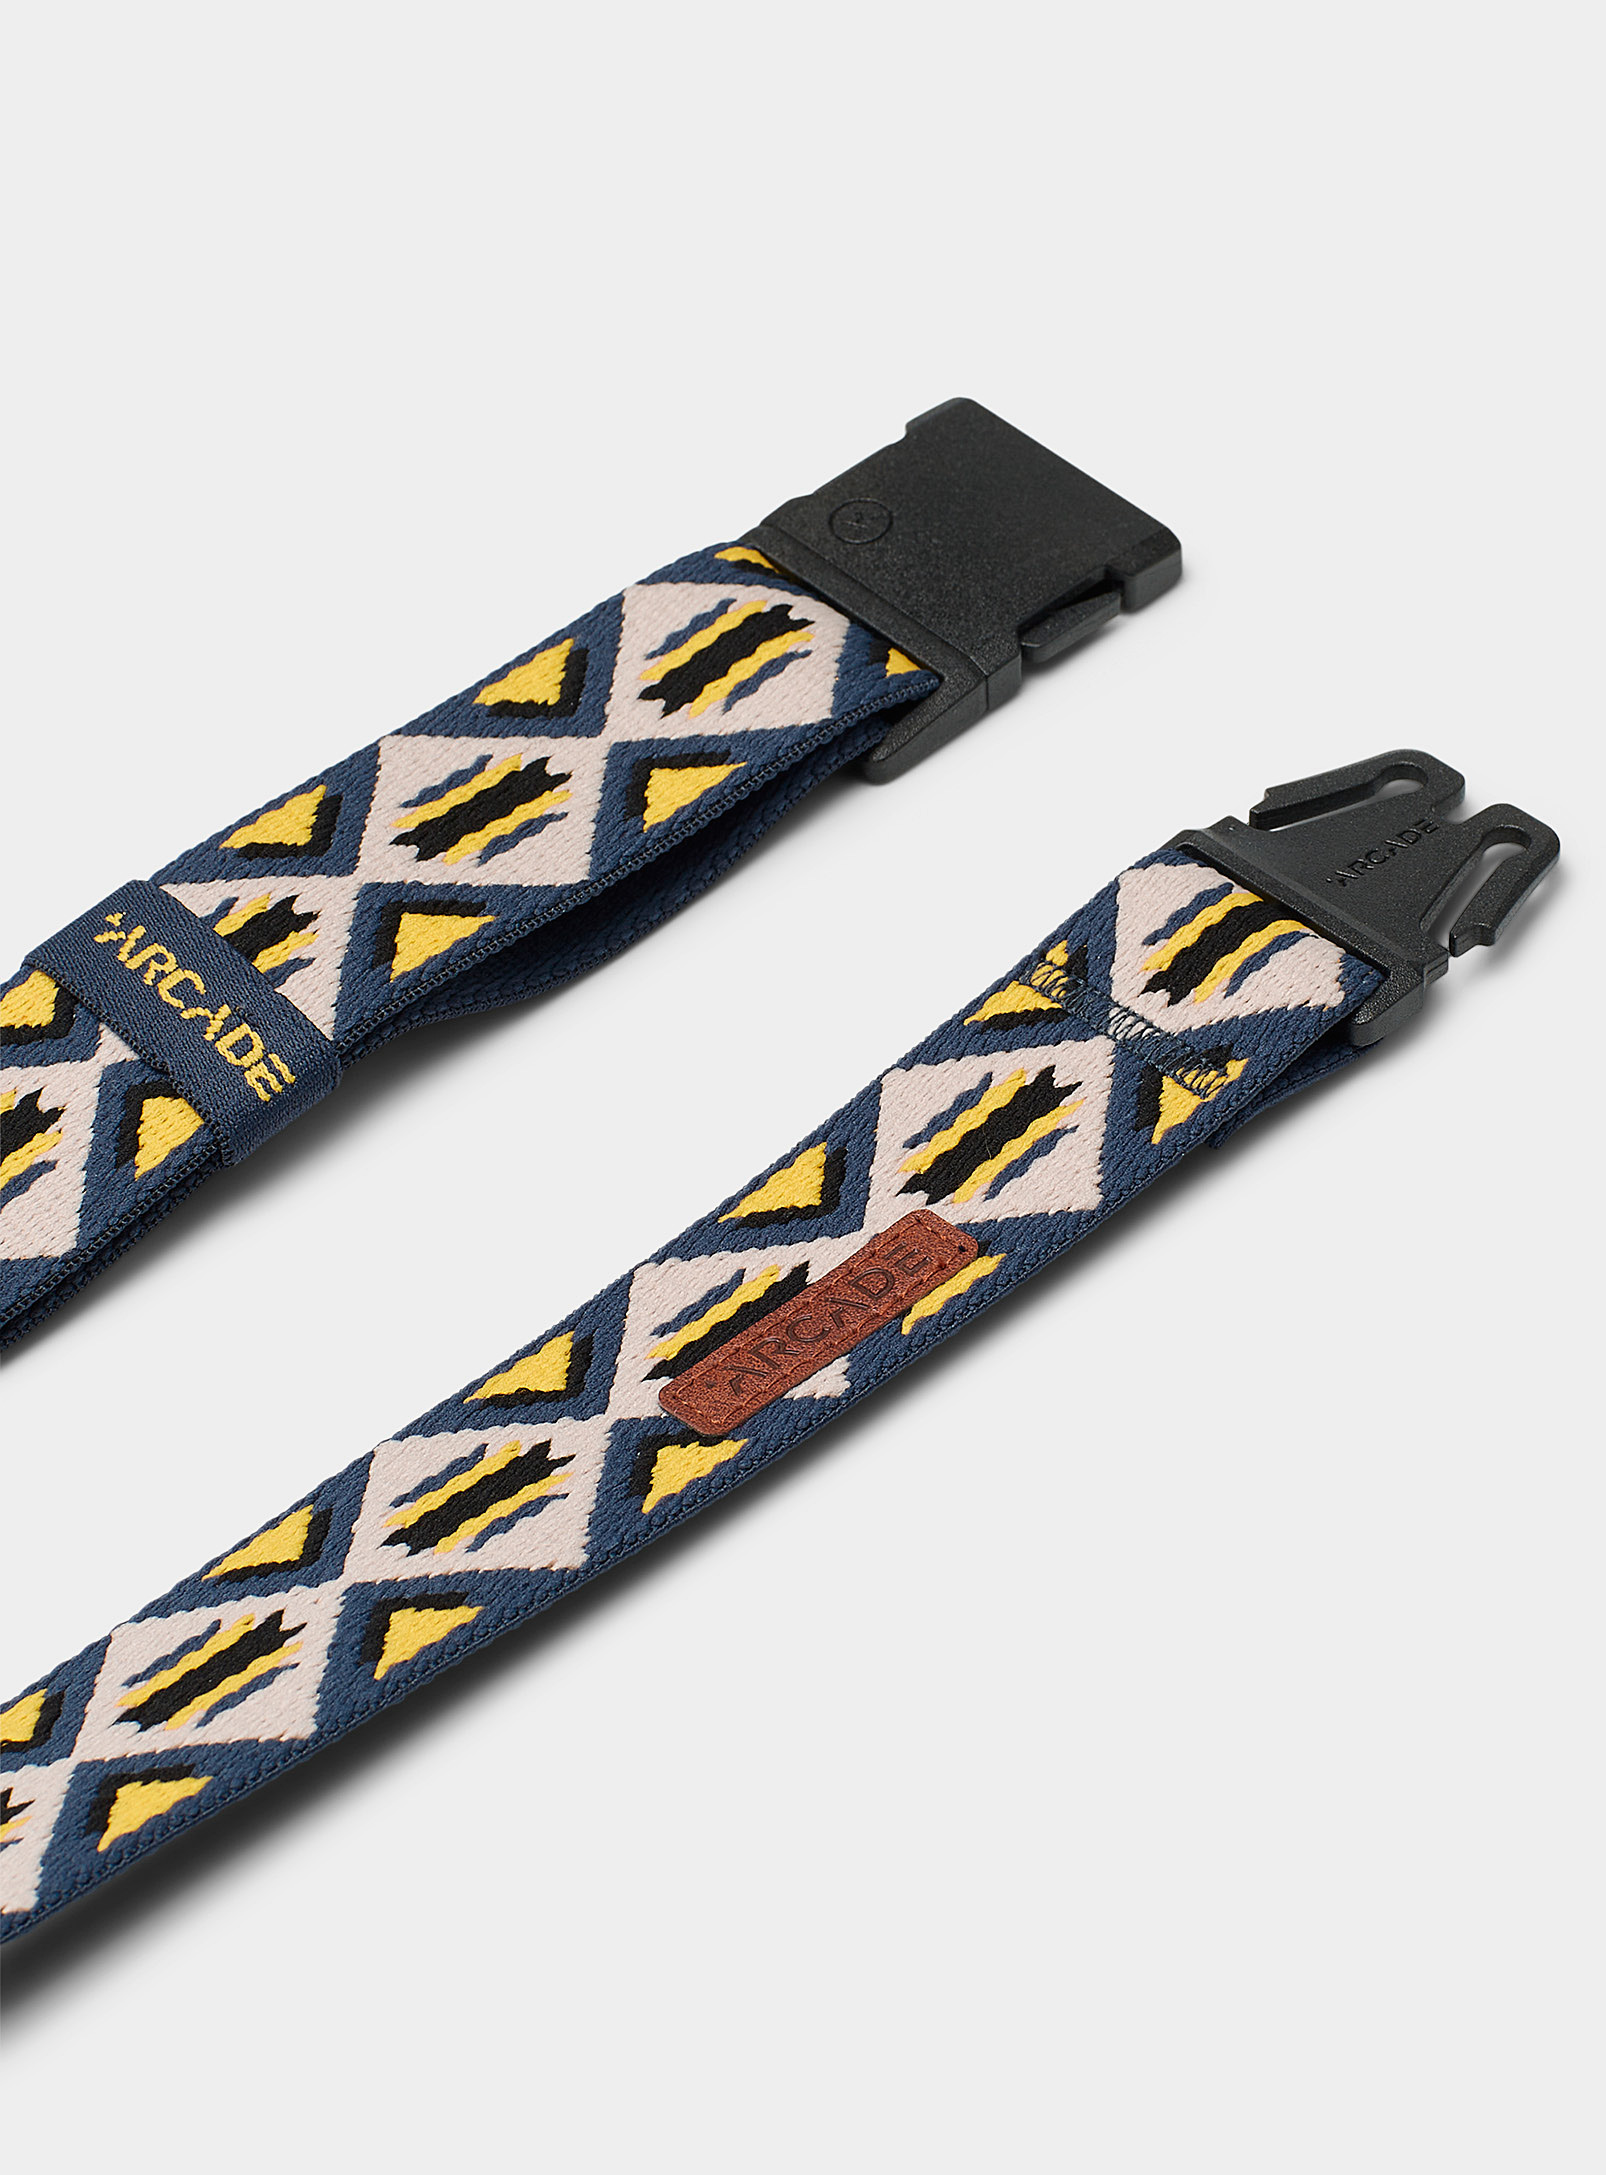 Arcade - La ceinture tissée motif géo coloré